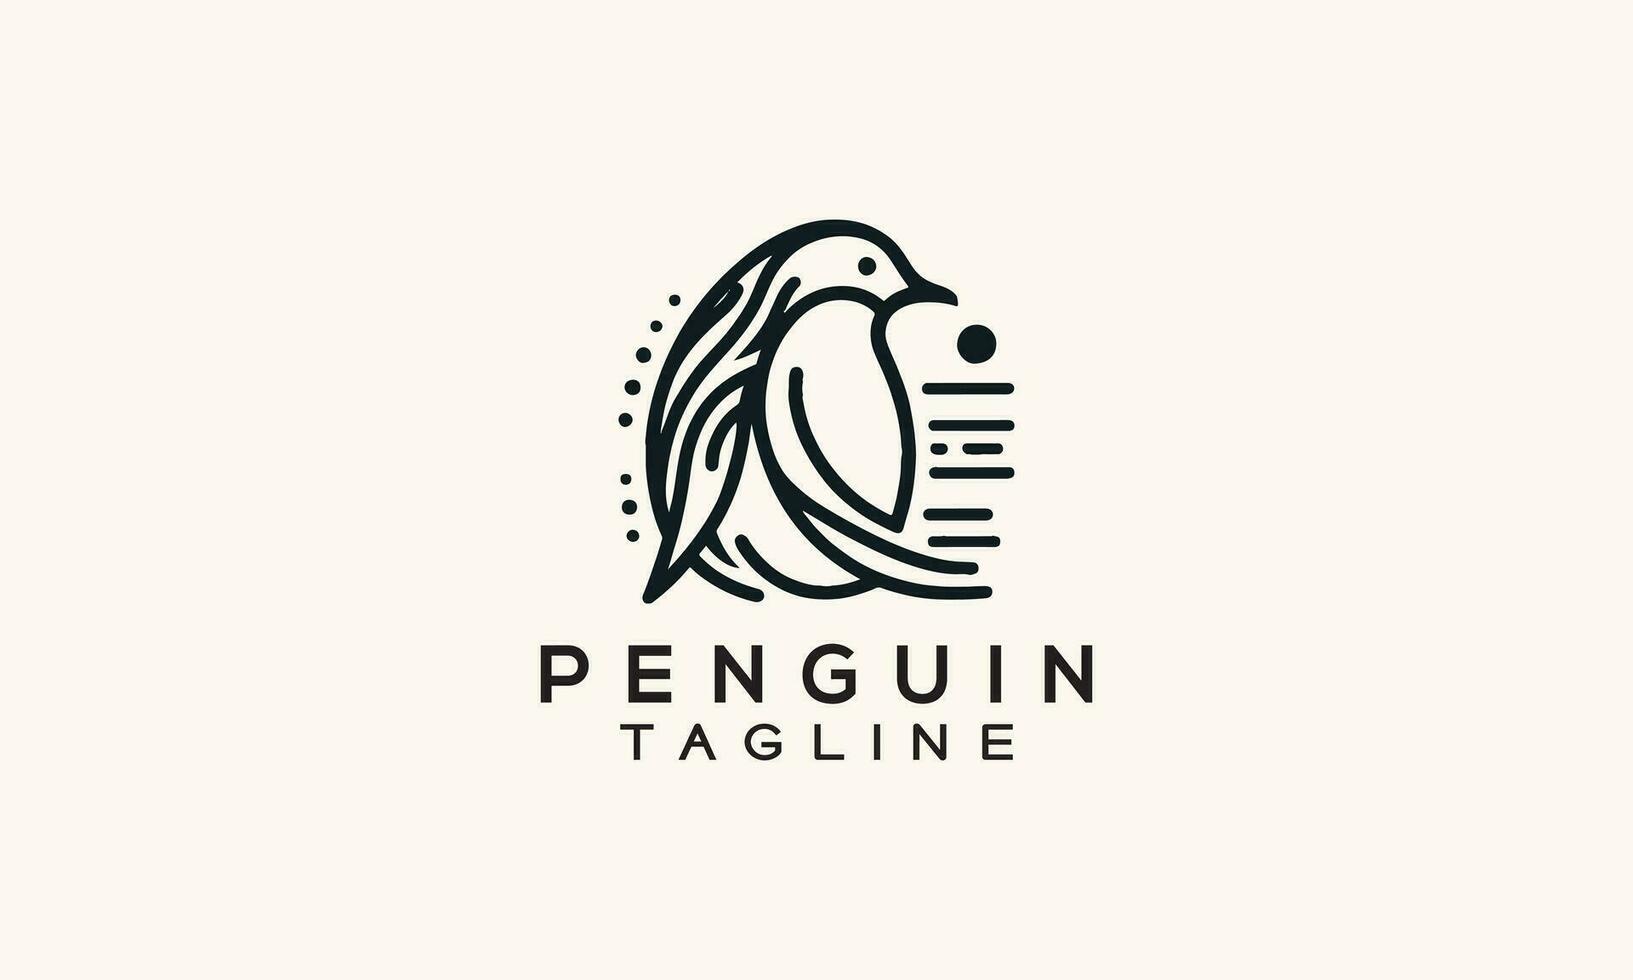 pingvin vektor logotyp ikon minimalistisk linje konst